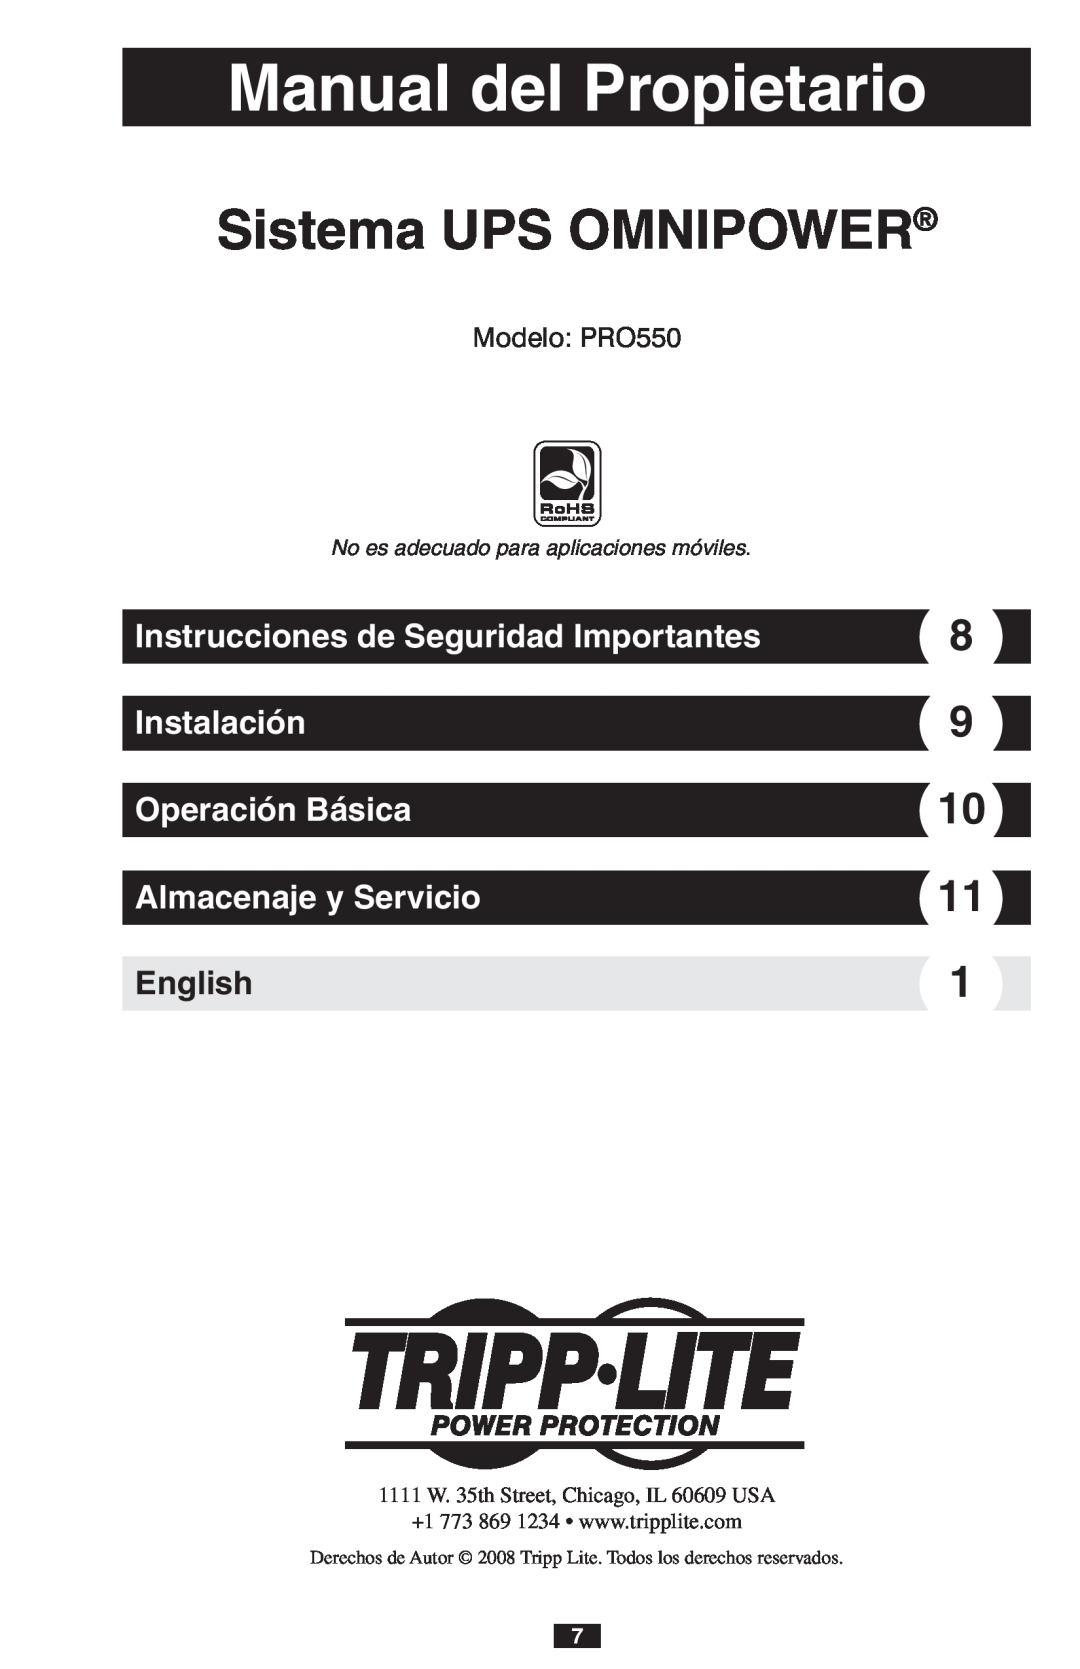 Tripp Lite owner manual Manual del Propietario, Sistema UPS OMNIPOWER, Almacenaje y Servicio, English, Modelo PRO550 